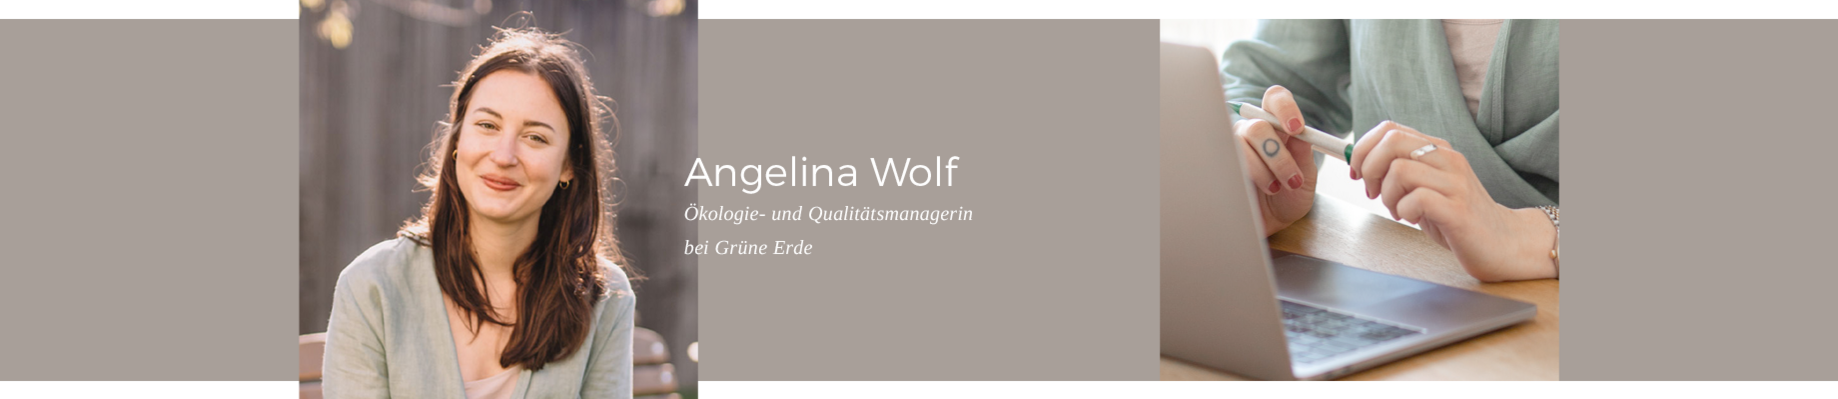 Erfahren Sie mehr: Unsere Mitarbeiterin Angelina Wolf - Ökologie und Qualitätsmanagerin bei Grüne Erde